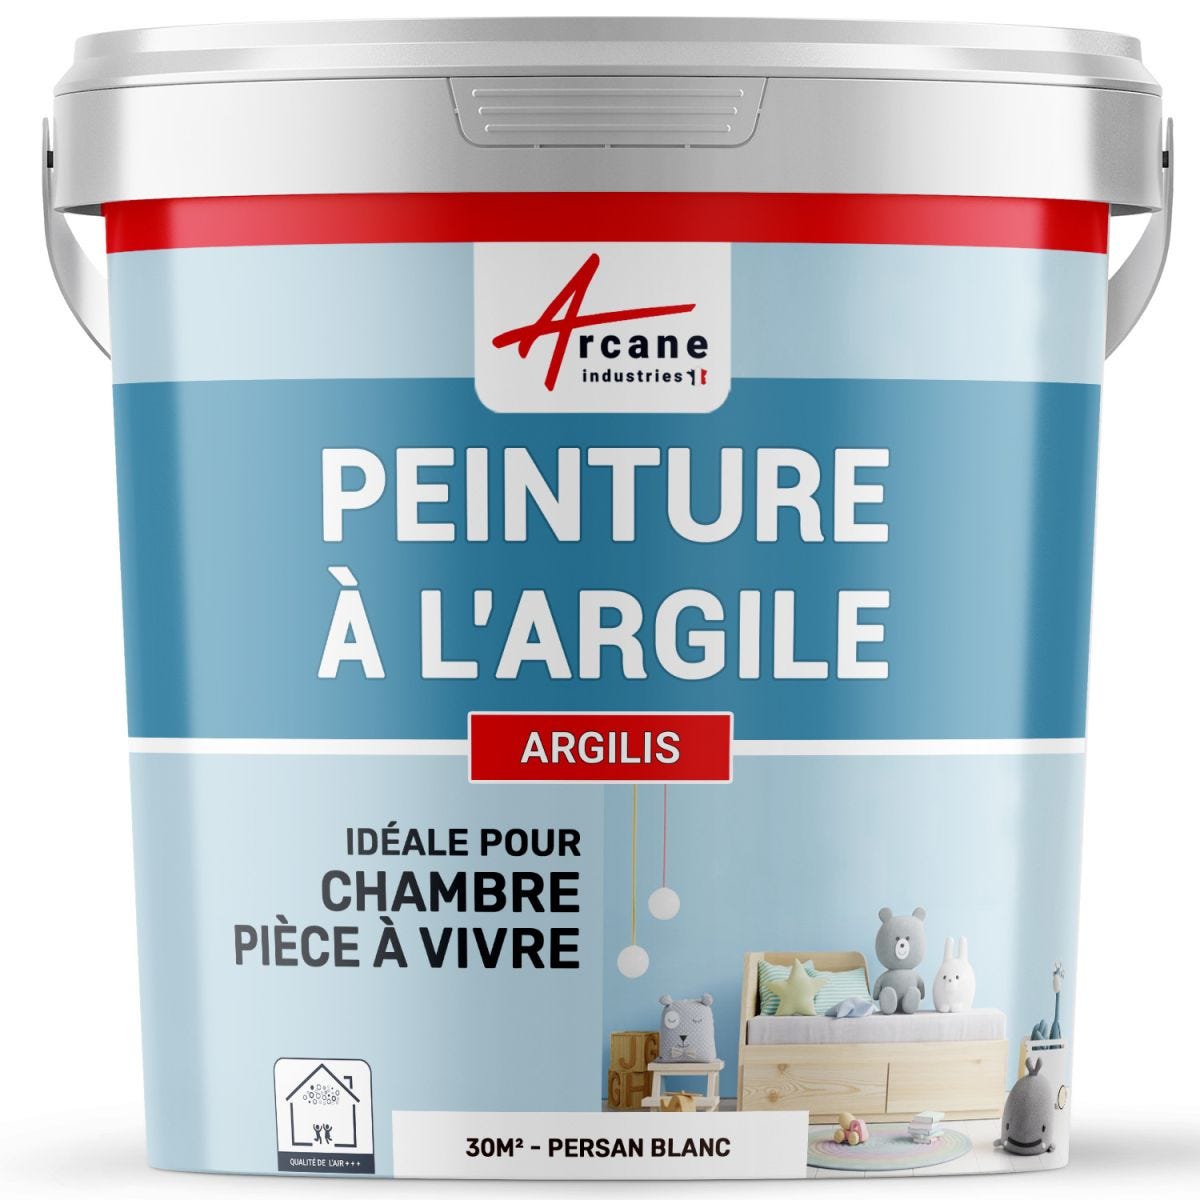 PEINTURE ARGILE naturelle et saine - ARGILIS Persan Blanc - 30 m² (5 kg en 1 couche)ARCANE INDUSTRIES 0